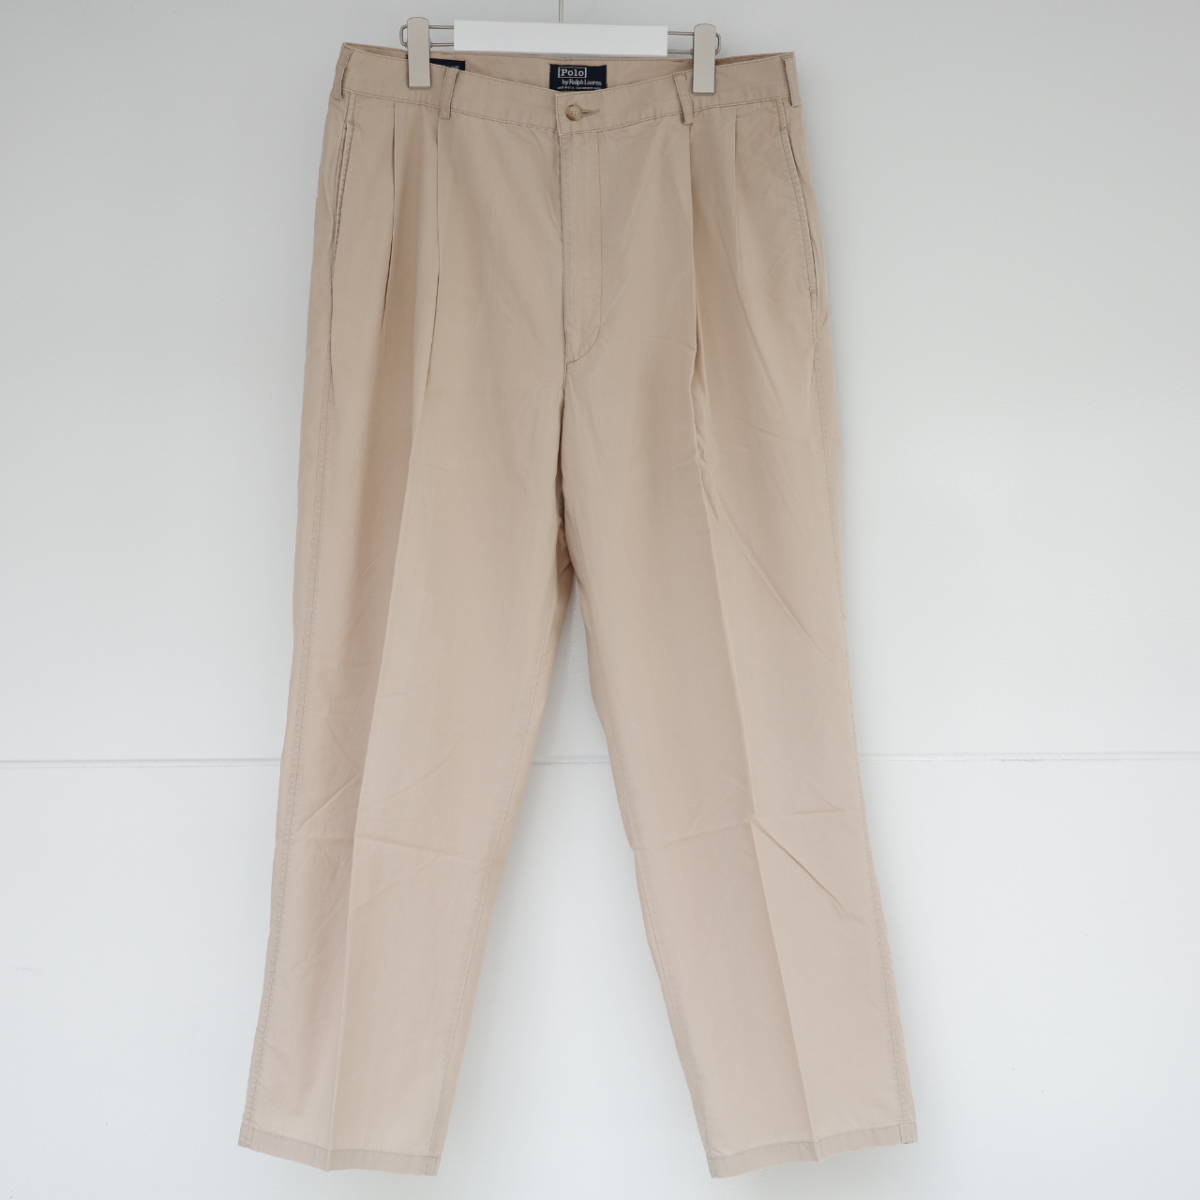 絶対一番安い MADE pants Golf Lauren Ralph by Polo W36/L32 ゴルフパンツ ラルフローレン IN vintage 90s 80s USA その他